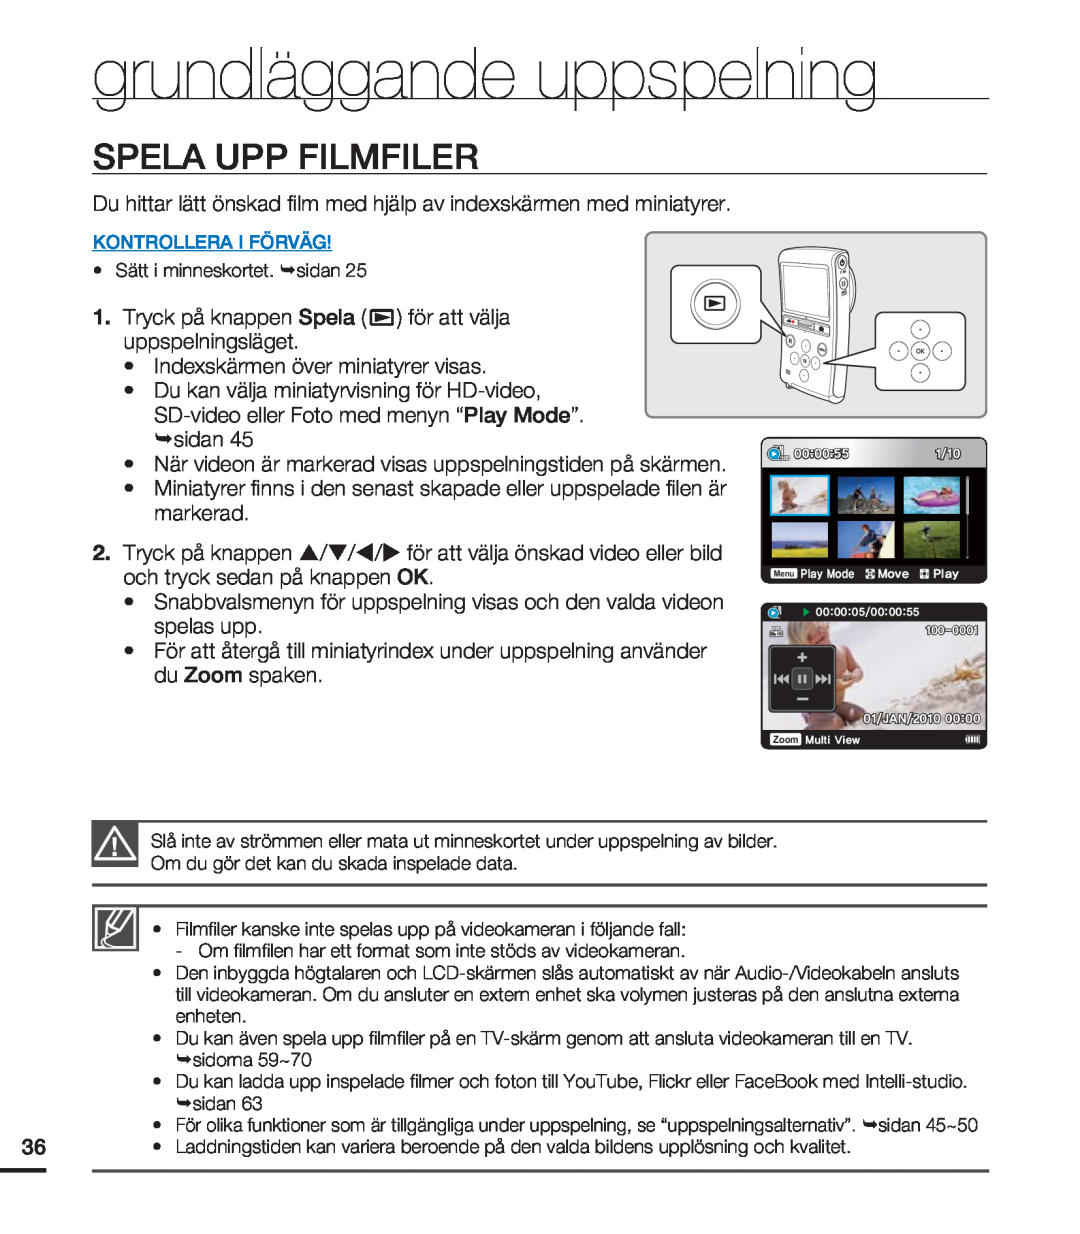 Samsung HMX-U20BP/EDC manual Spela Upp Filmfiler, grundläggande uppspelning 